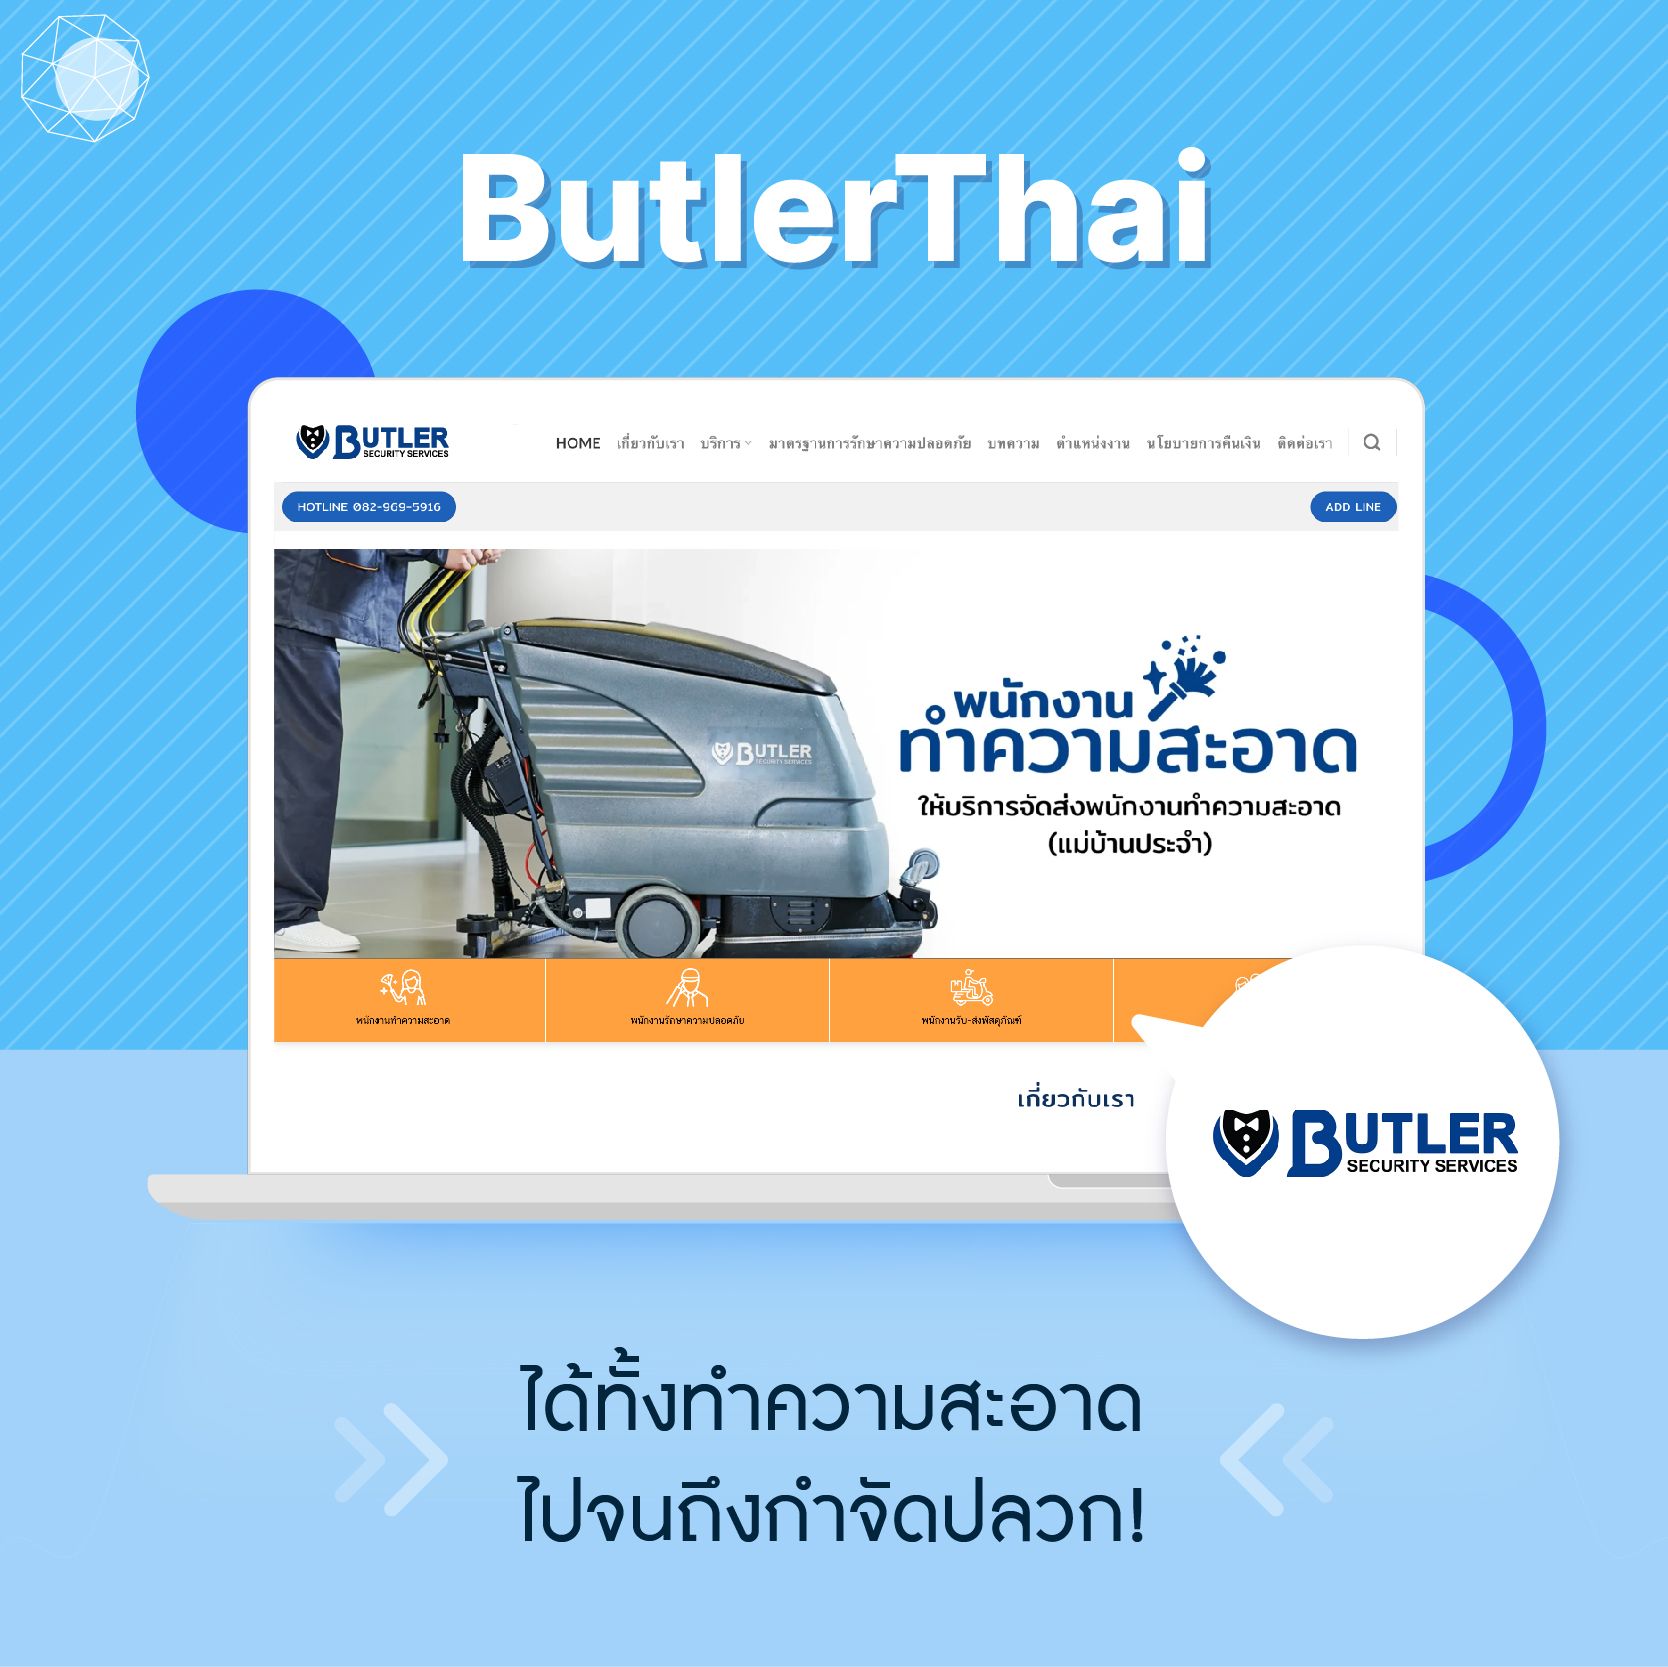 บริษัทจัดหาแม่บ้าน Bulter Thai